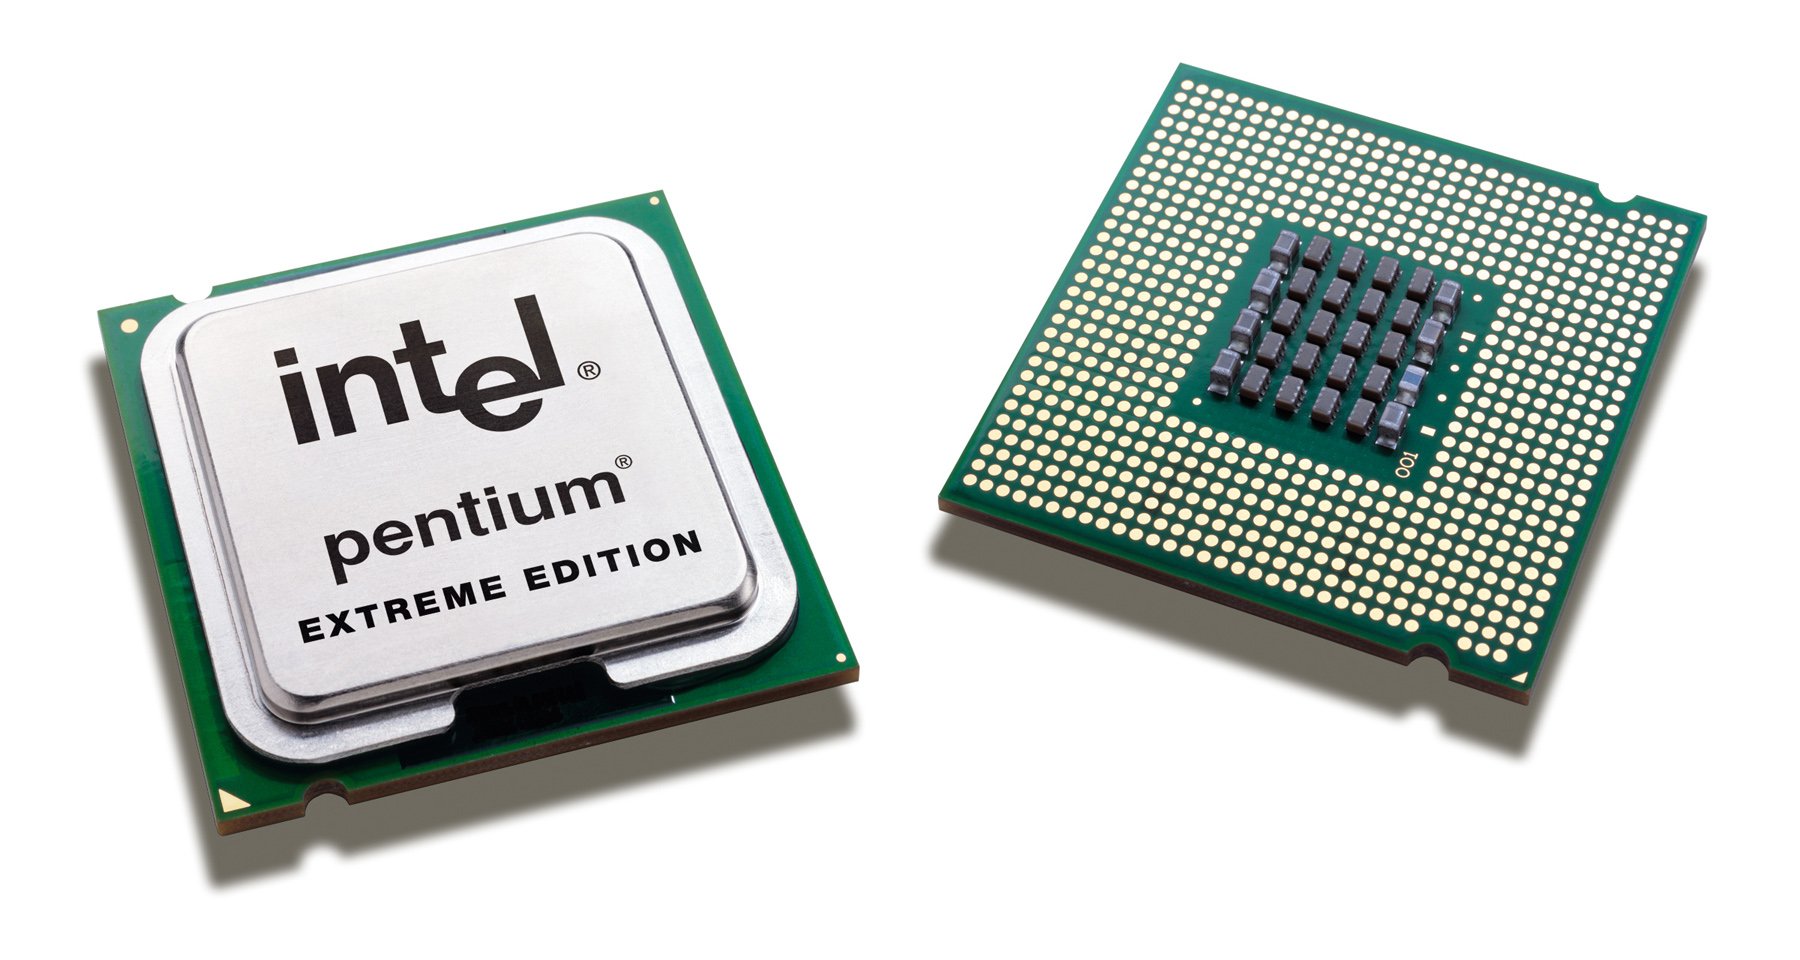 Intel stampft Marken Pentium und Celeron ein